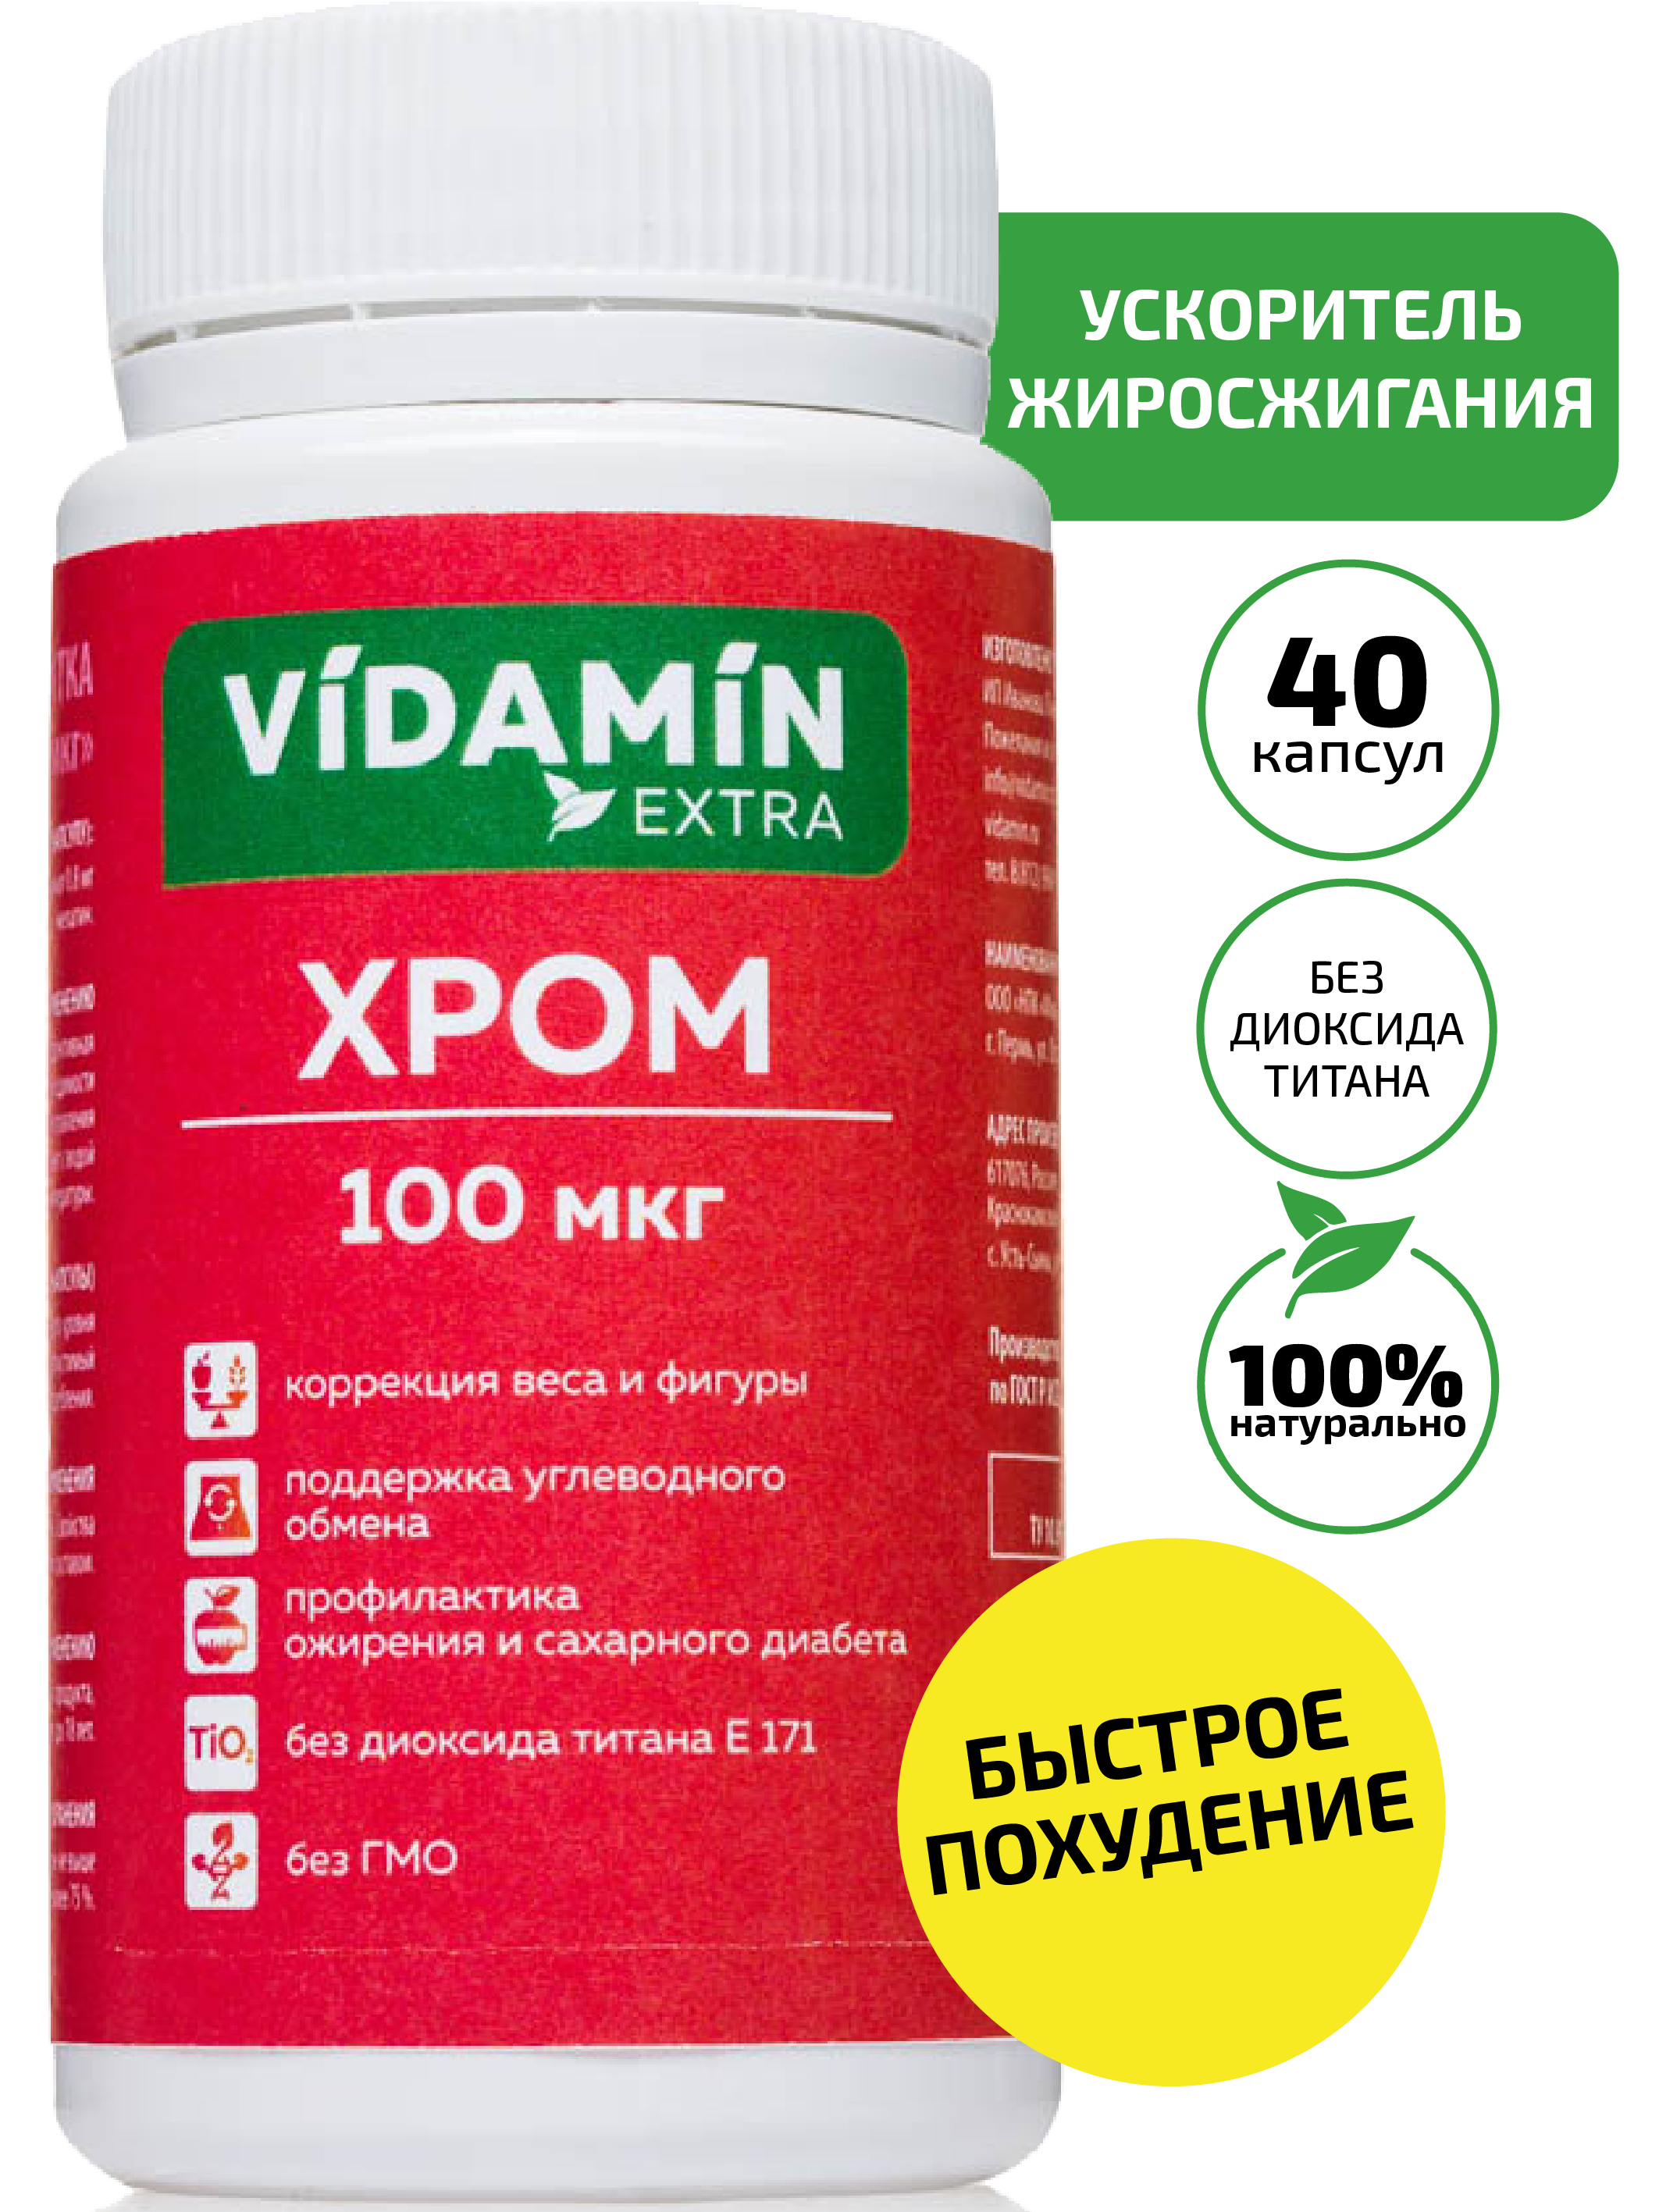 Хром VIDAMIN EXTRA хрома пиколинат жиросжигатель для похудения 100 мкг капсулы 40 шт.